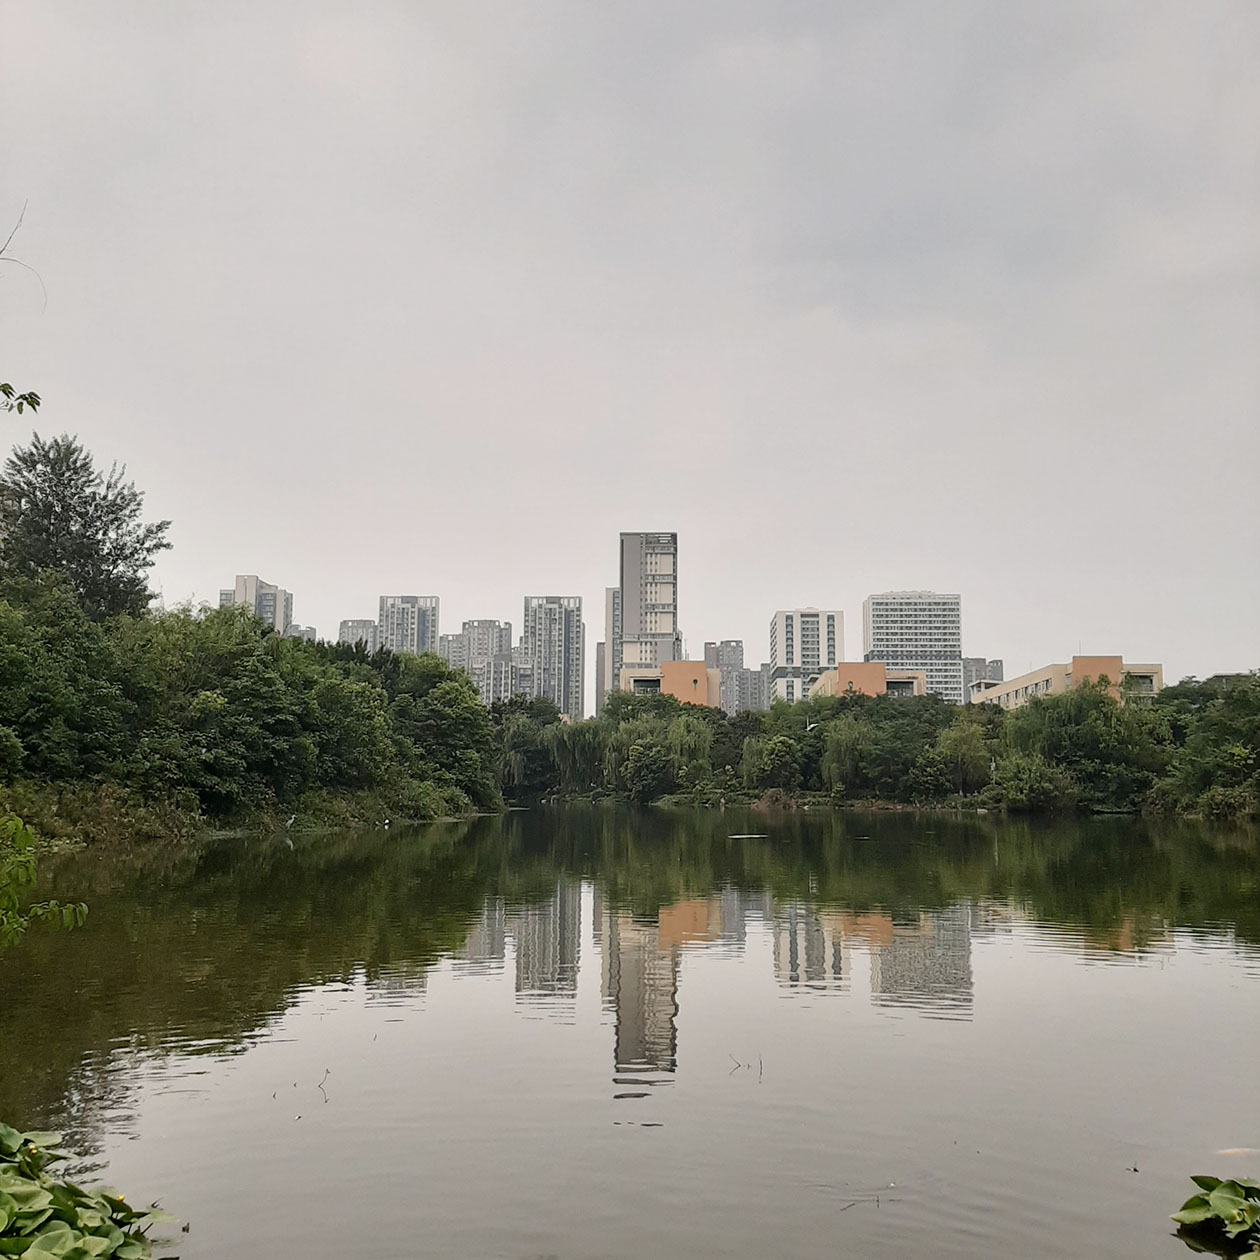 Район небоскребов соседствует с зеленым парком и прудом